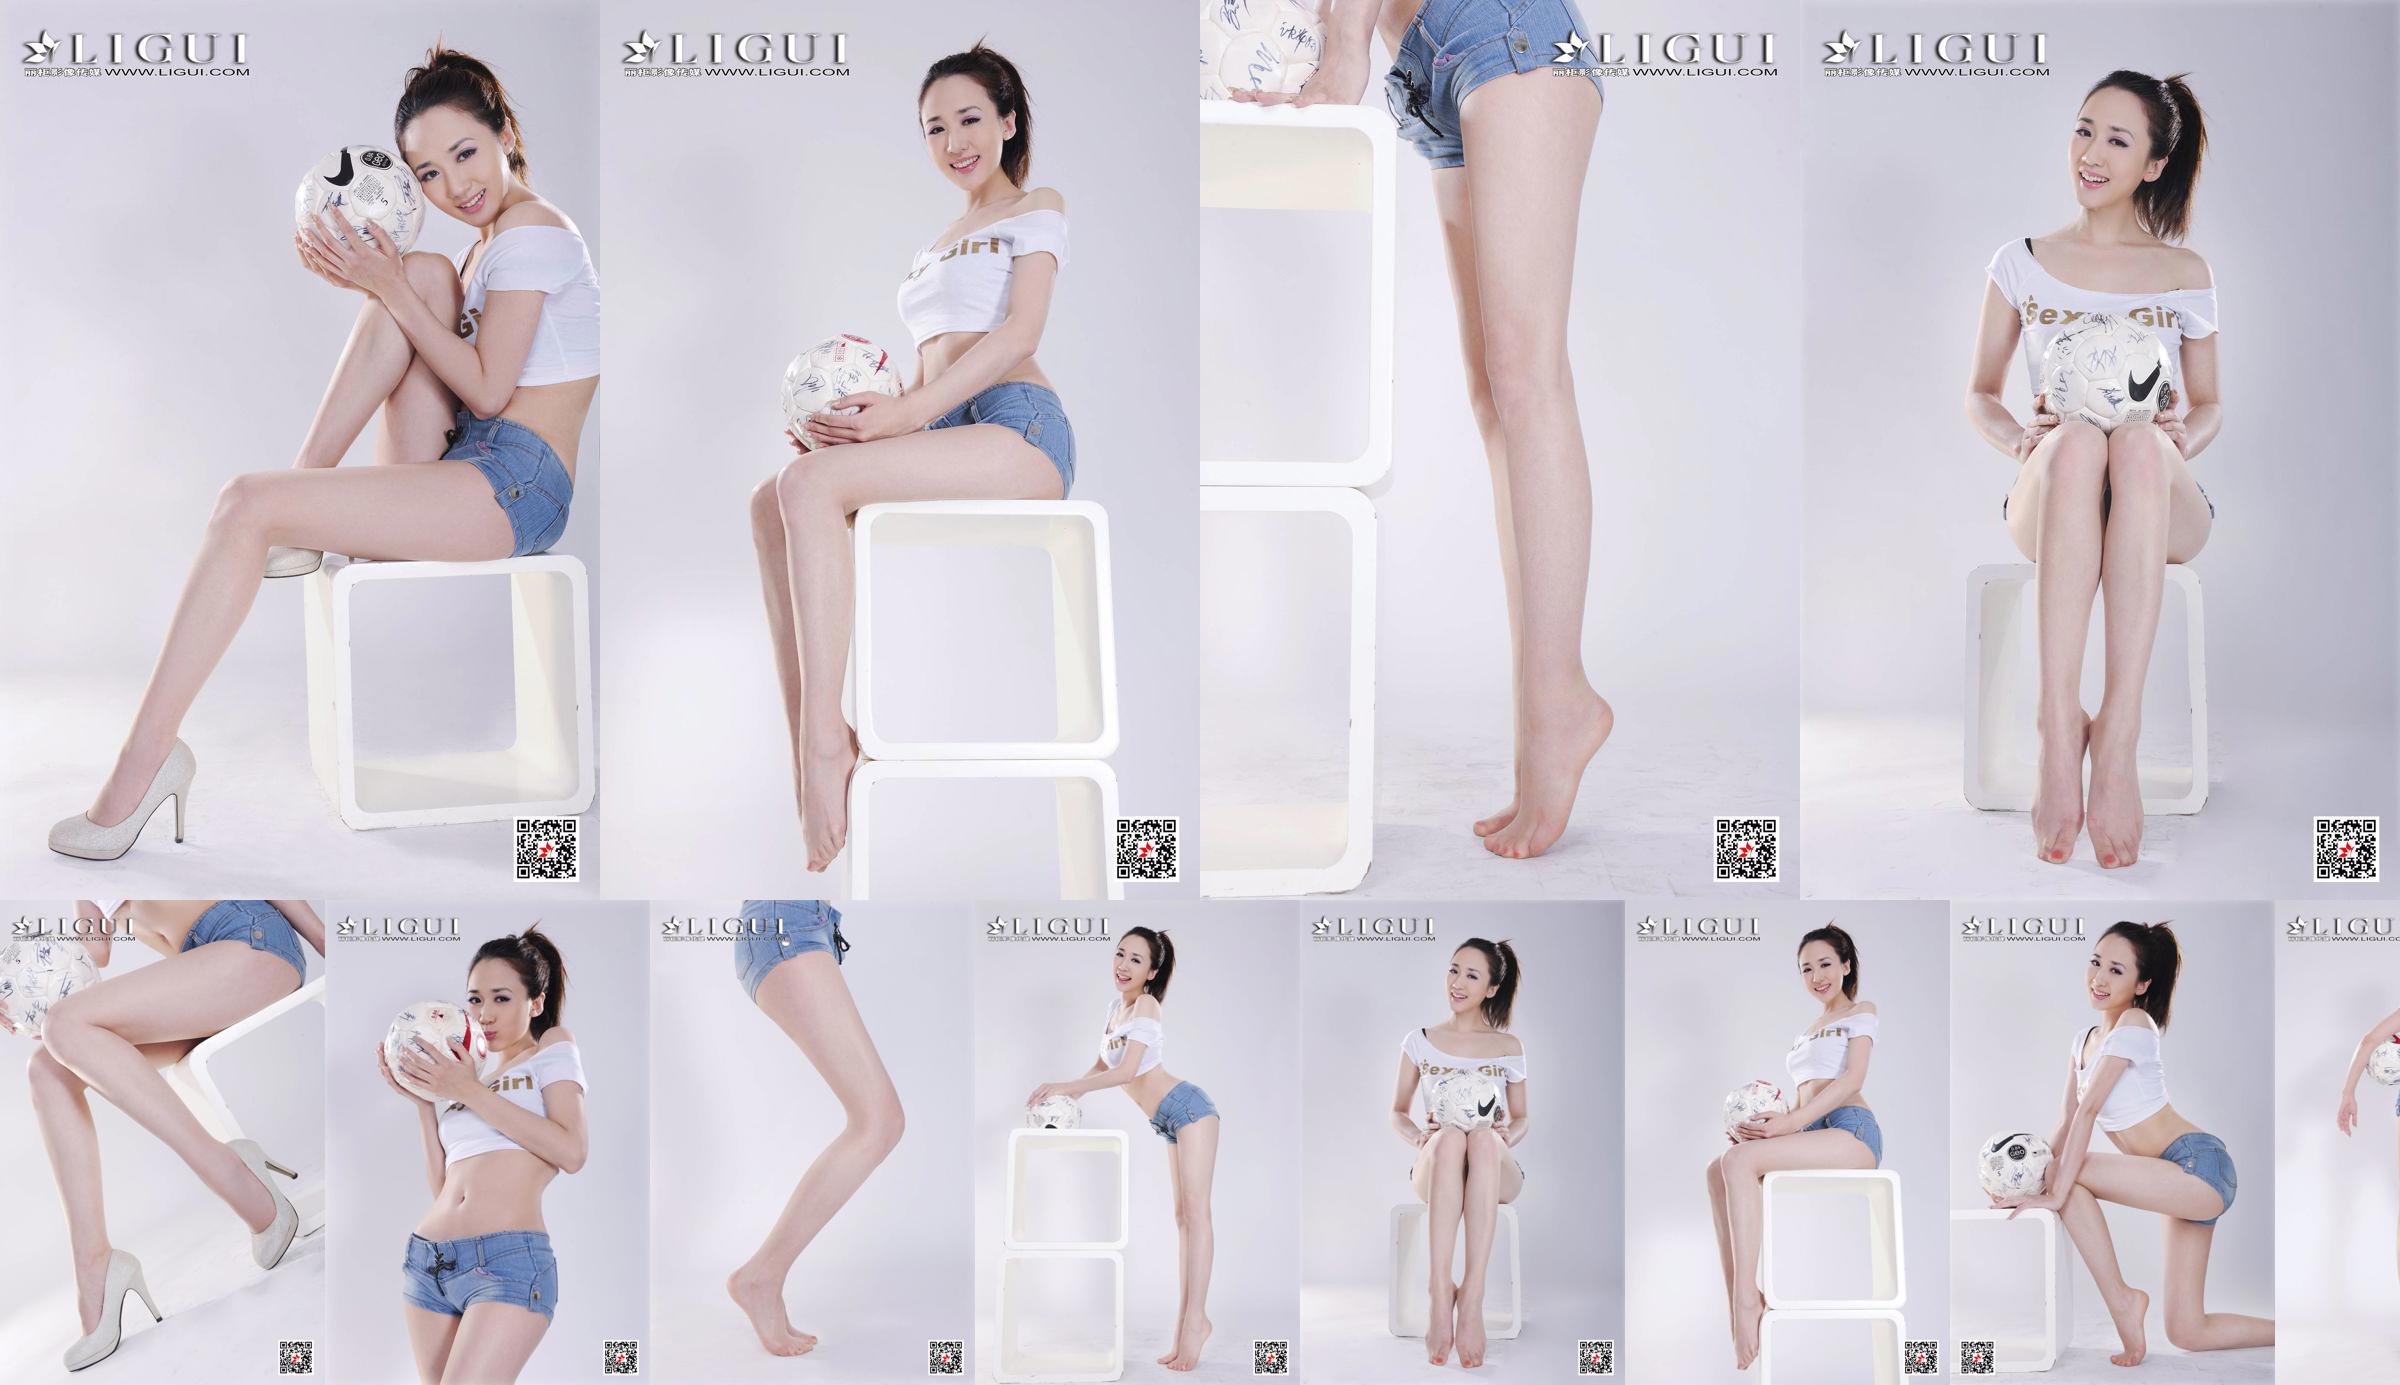 Model Qiu Chen "Super Short Hot Pants Football Girl" [LIGUI] No.b2994d Page 2